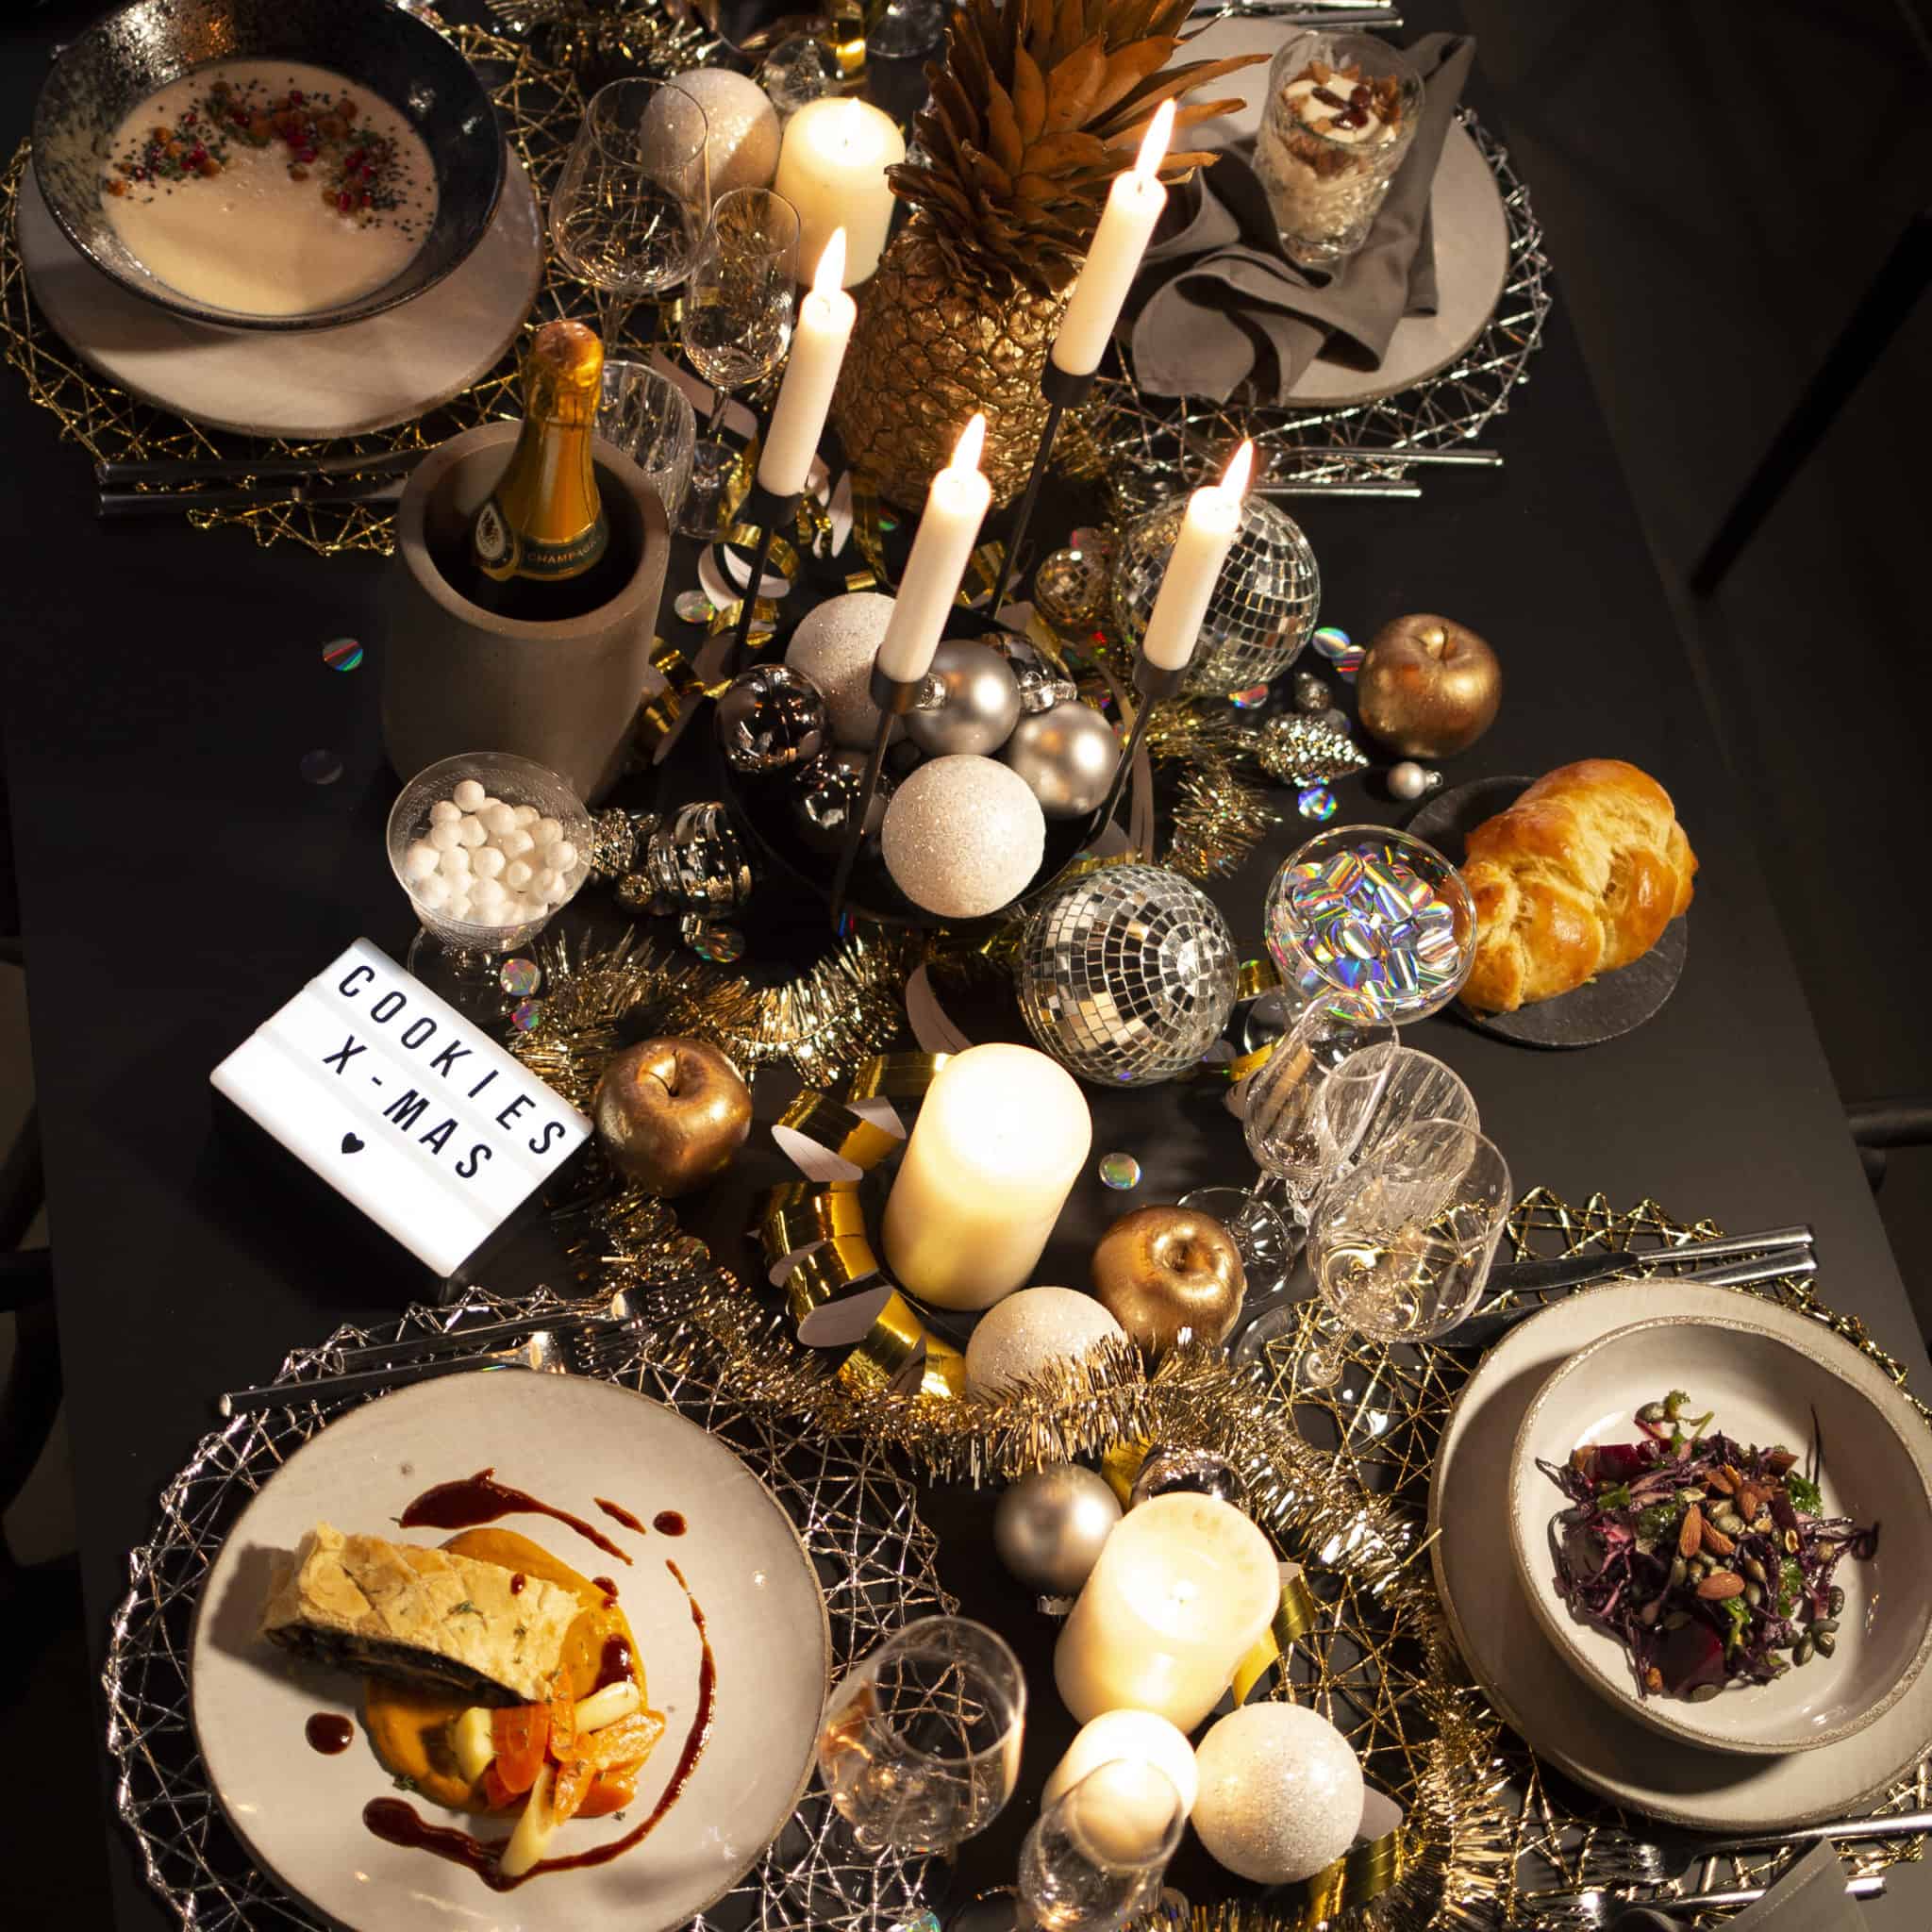 XMAS 29 10 20200 9180 scaled - gastronomie, food-nomyblog Probiert: Das Viergang-Weihnachtsmenü von Cookies für zu Hause